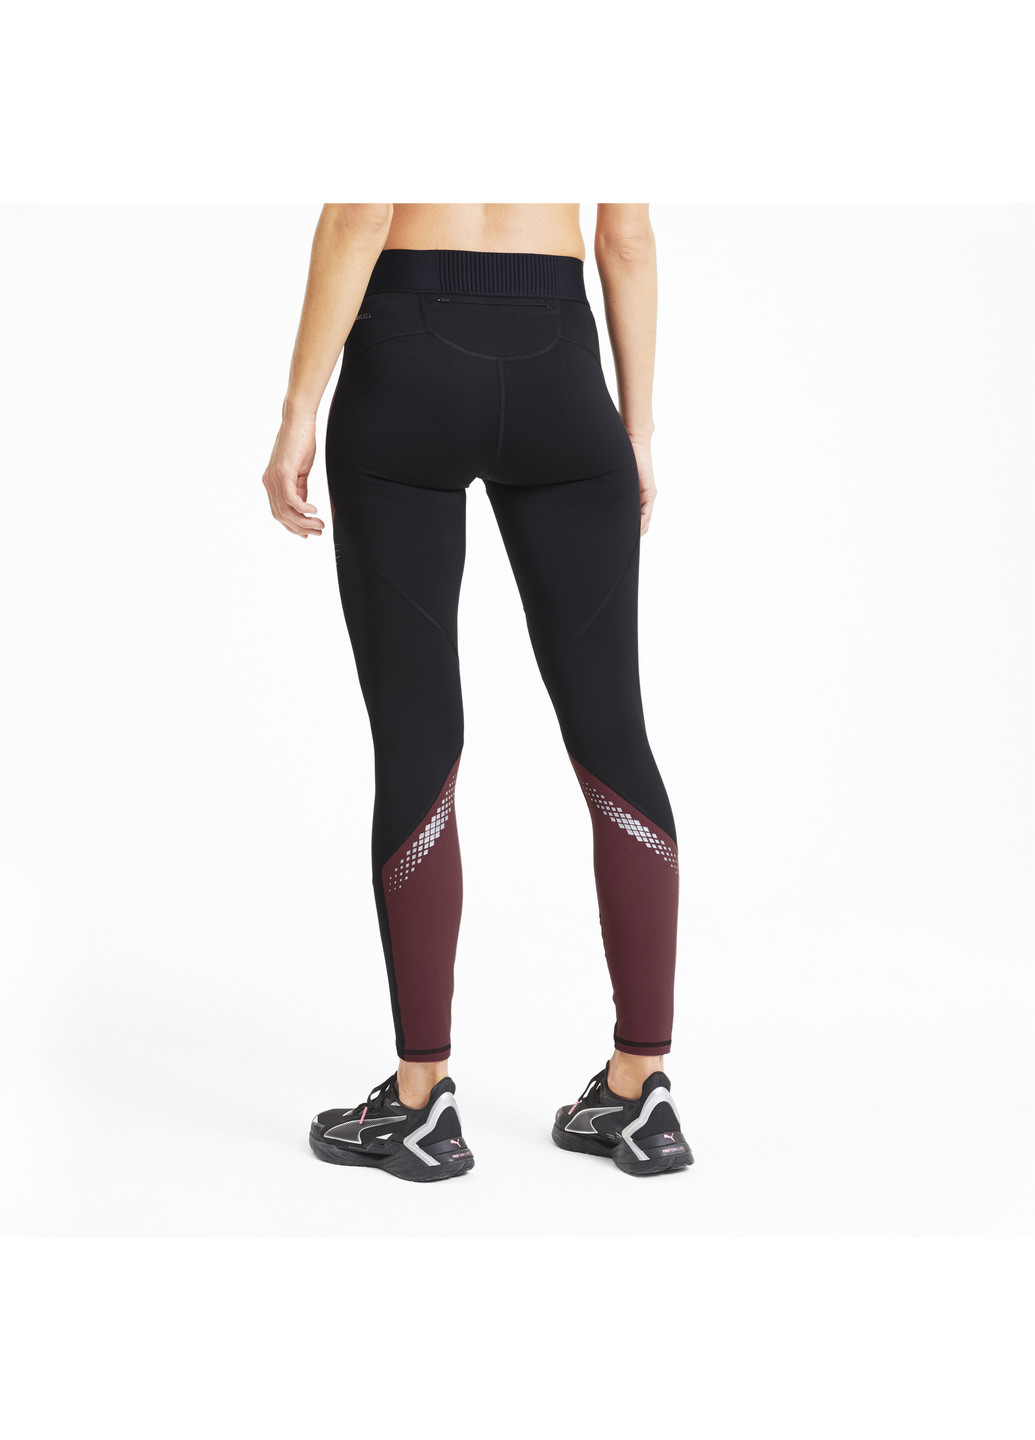 Черные демисезонные беговые лосины полной длины runner id full length women’s running leggings Puma